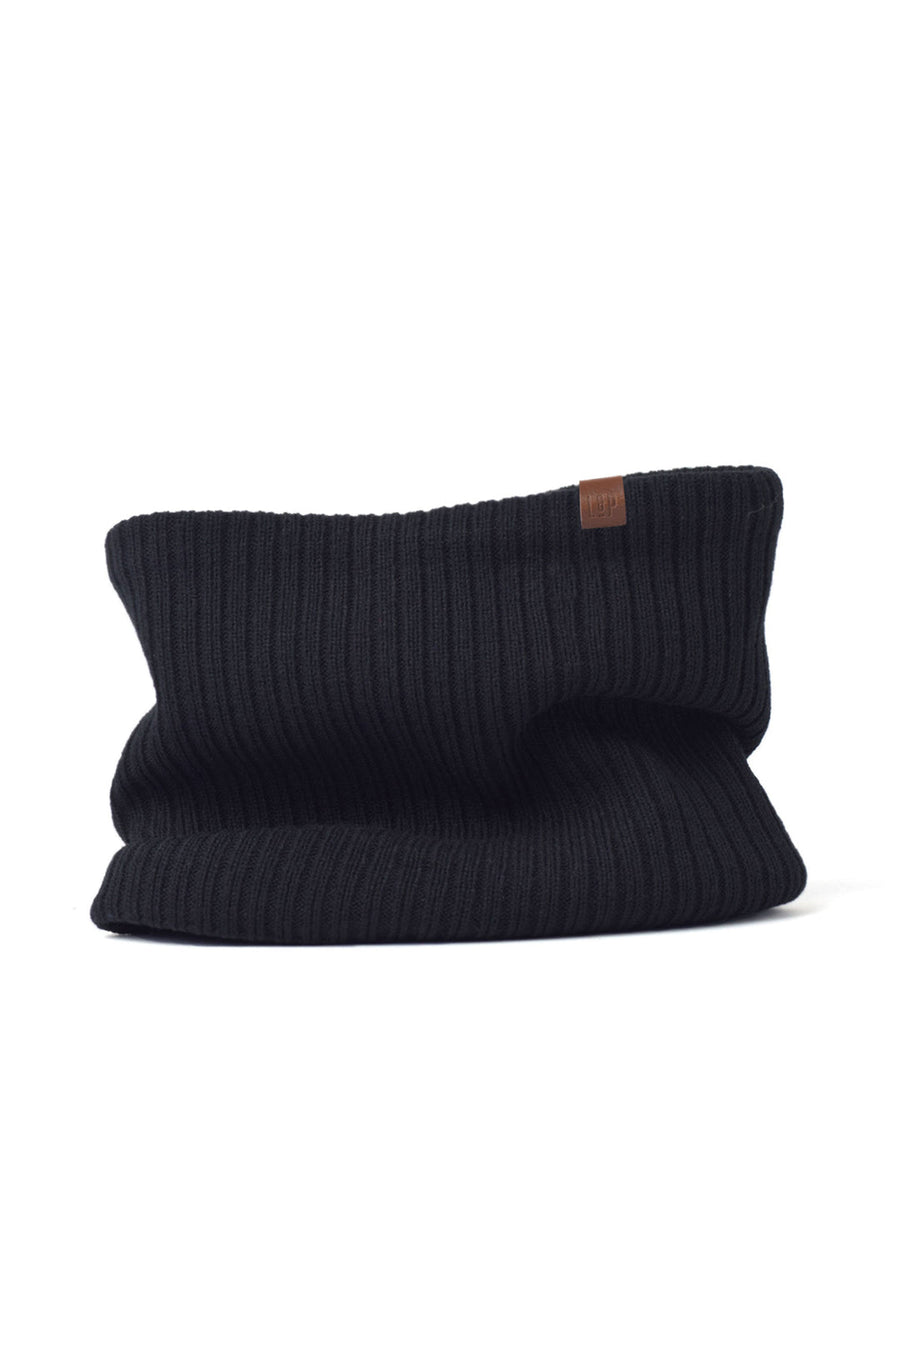 Fleece Lined Knit Neck Gaiter [Whistler series] [Black]